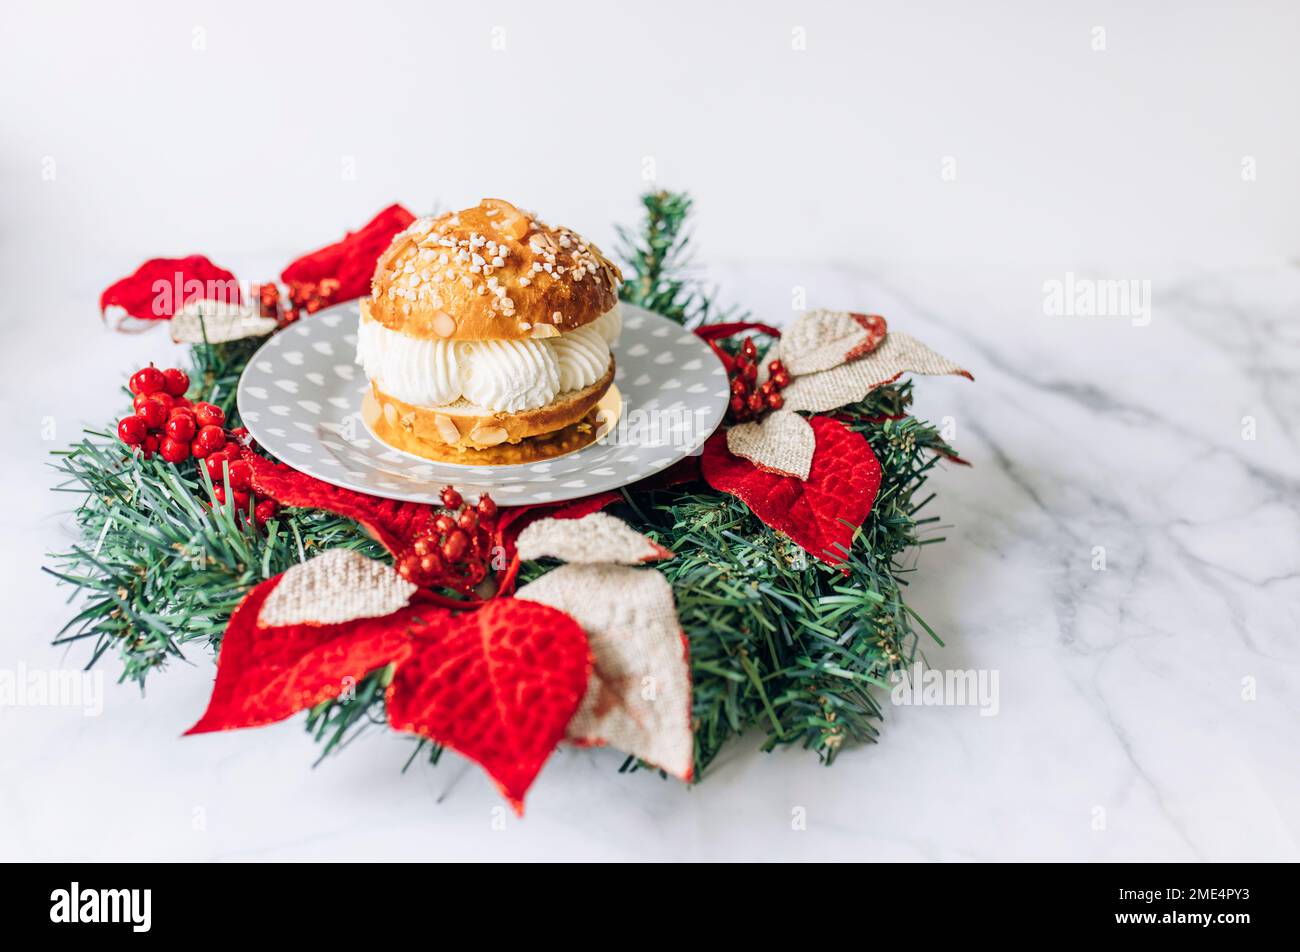 Christmas epiphany cake on table Stock Photo